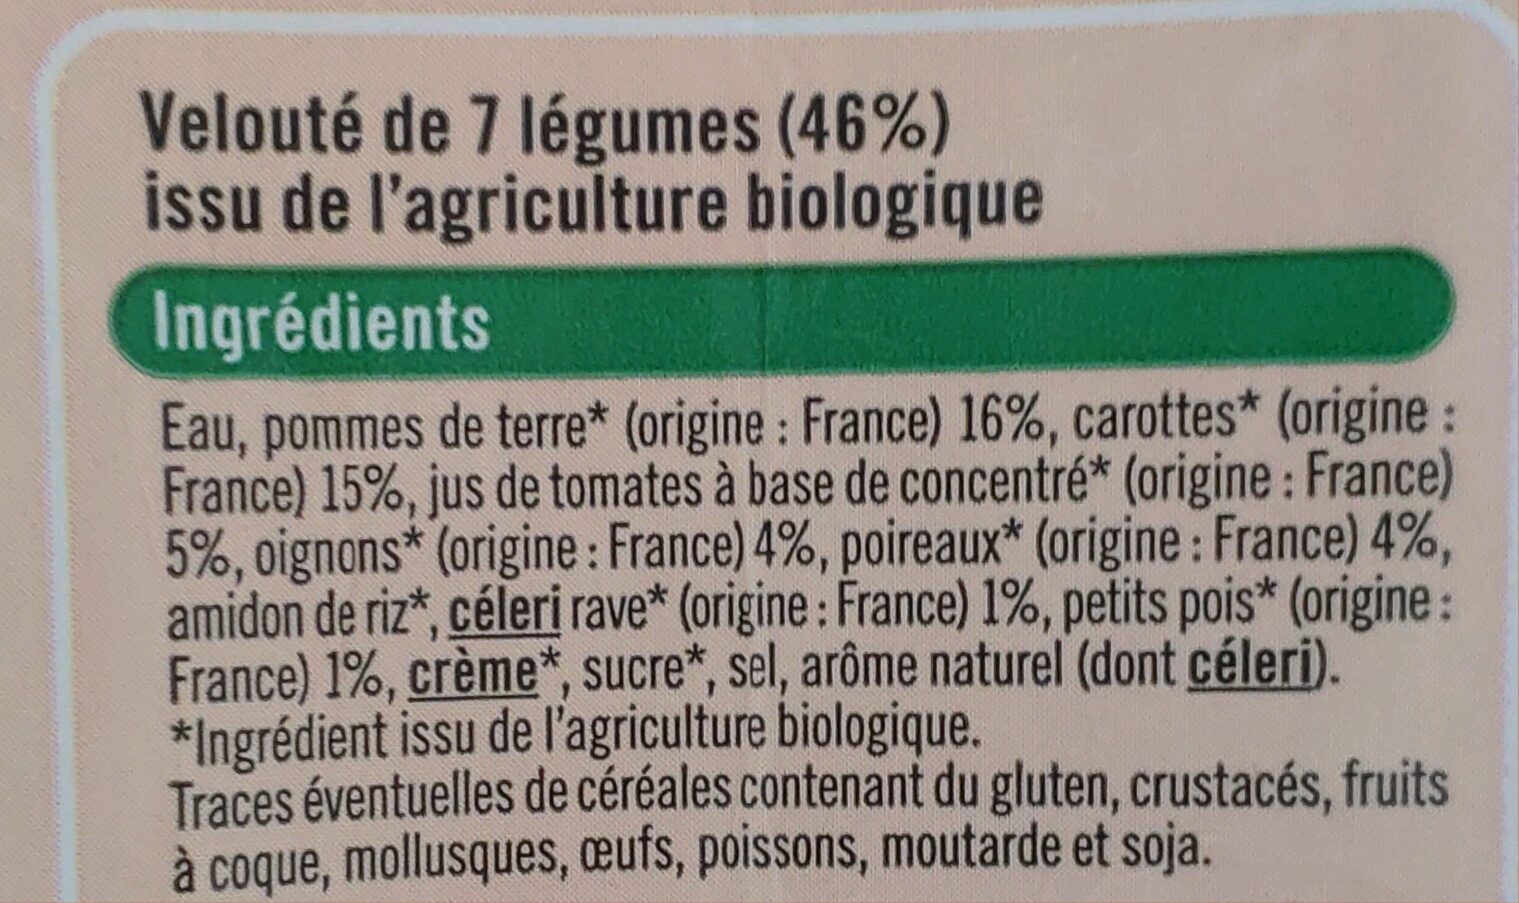 Velouté 7 légumes bio - Ingredients - fr